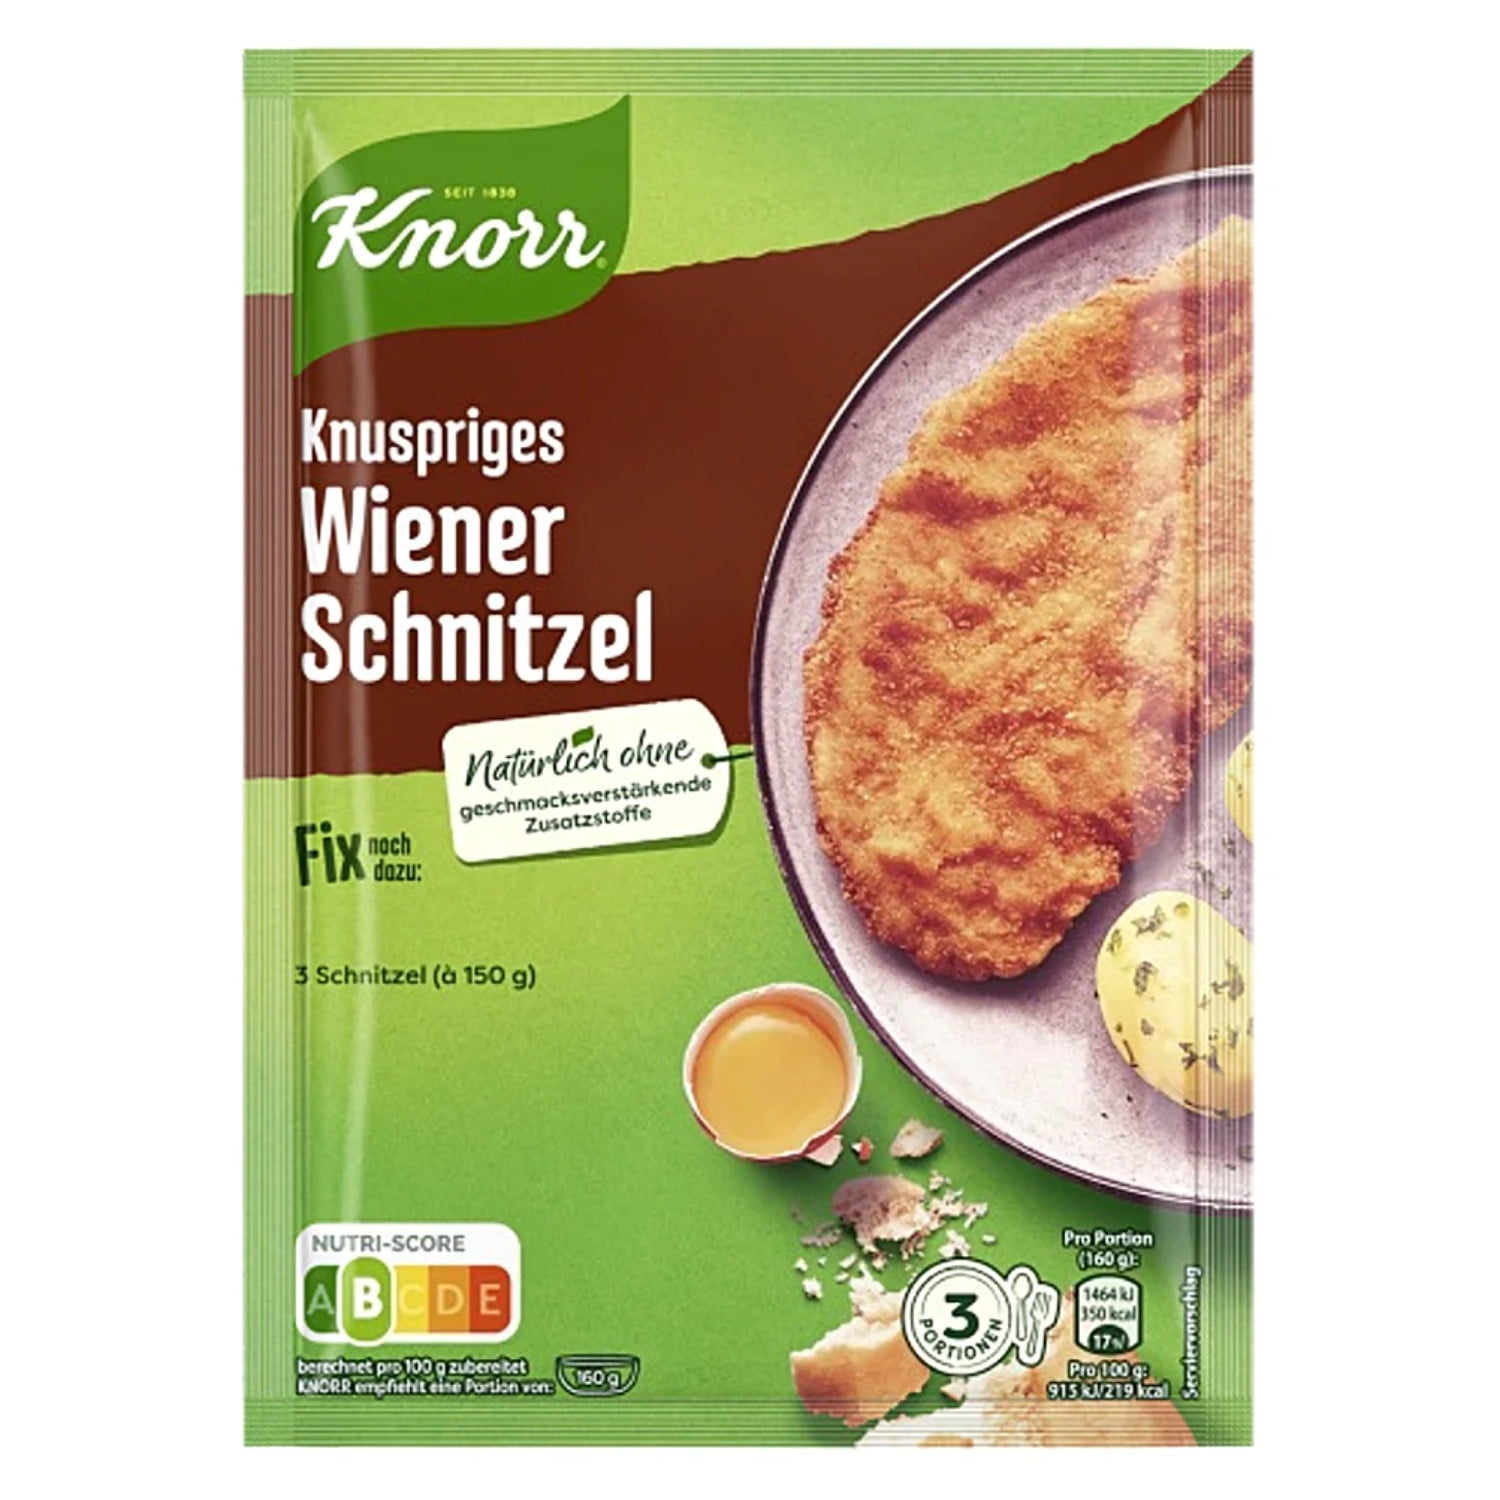 Wiener Schnitzel Fix pack Knorr 1 - For